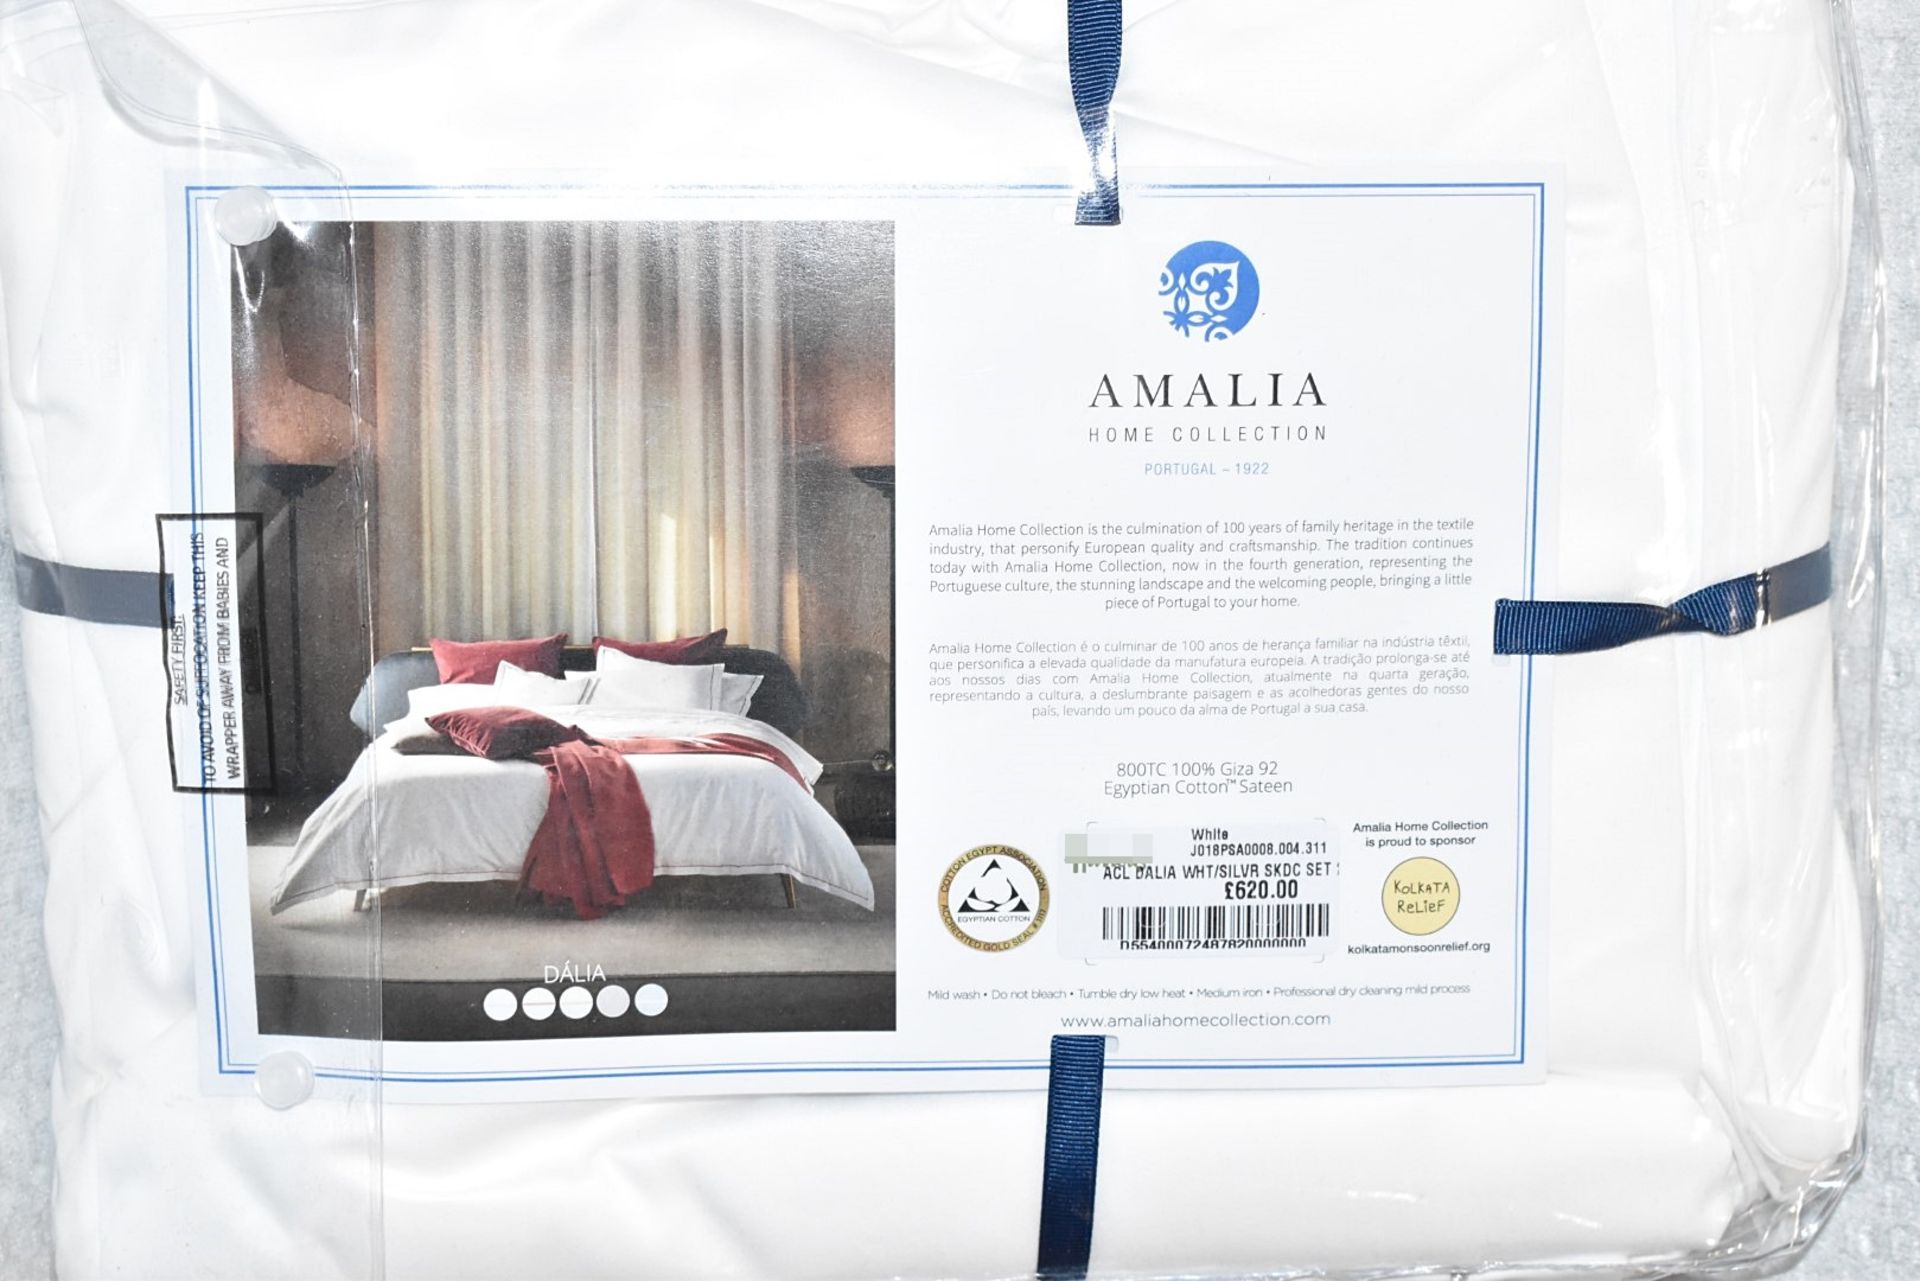 1 x AMALIA 'Dália' Luxury Egyptian Cotton Super King Duvet Cover and 2 x Pillowcases Set, in White - Image 3 of 6